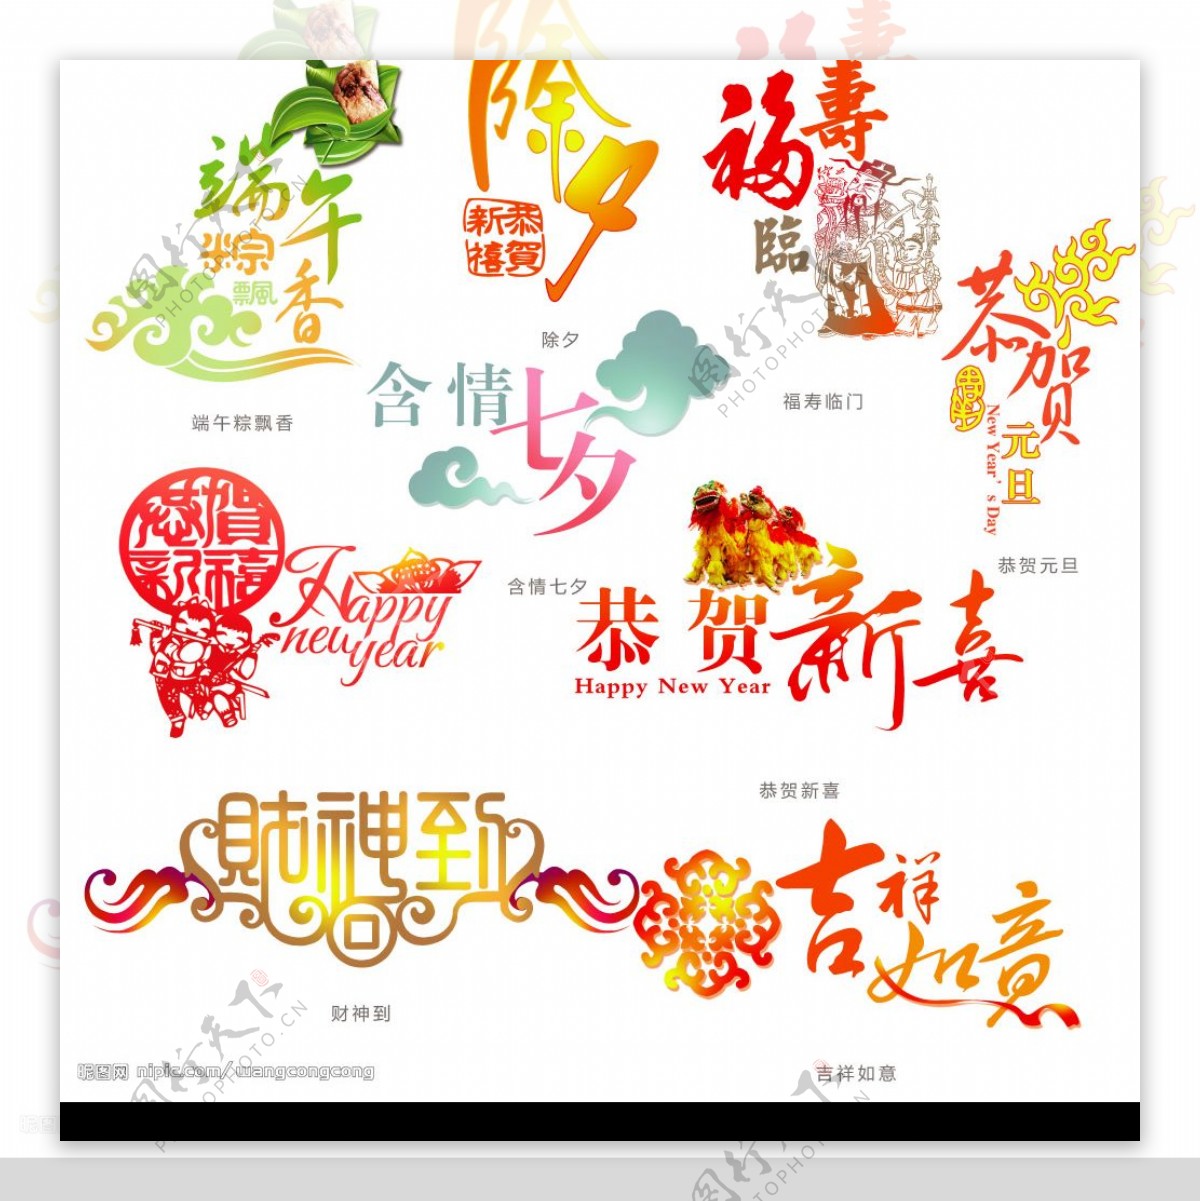 中国传统节日字体设计